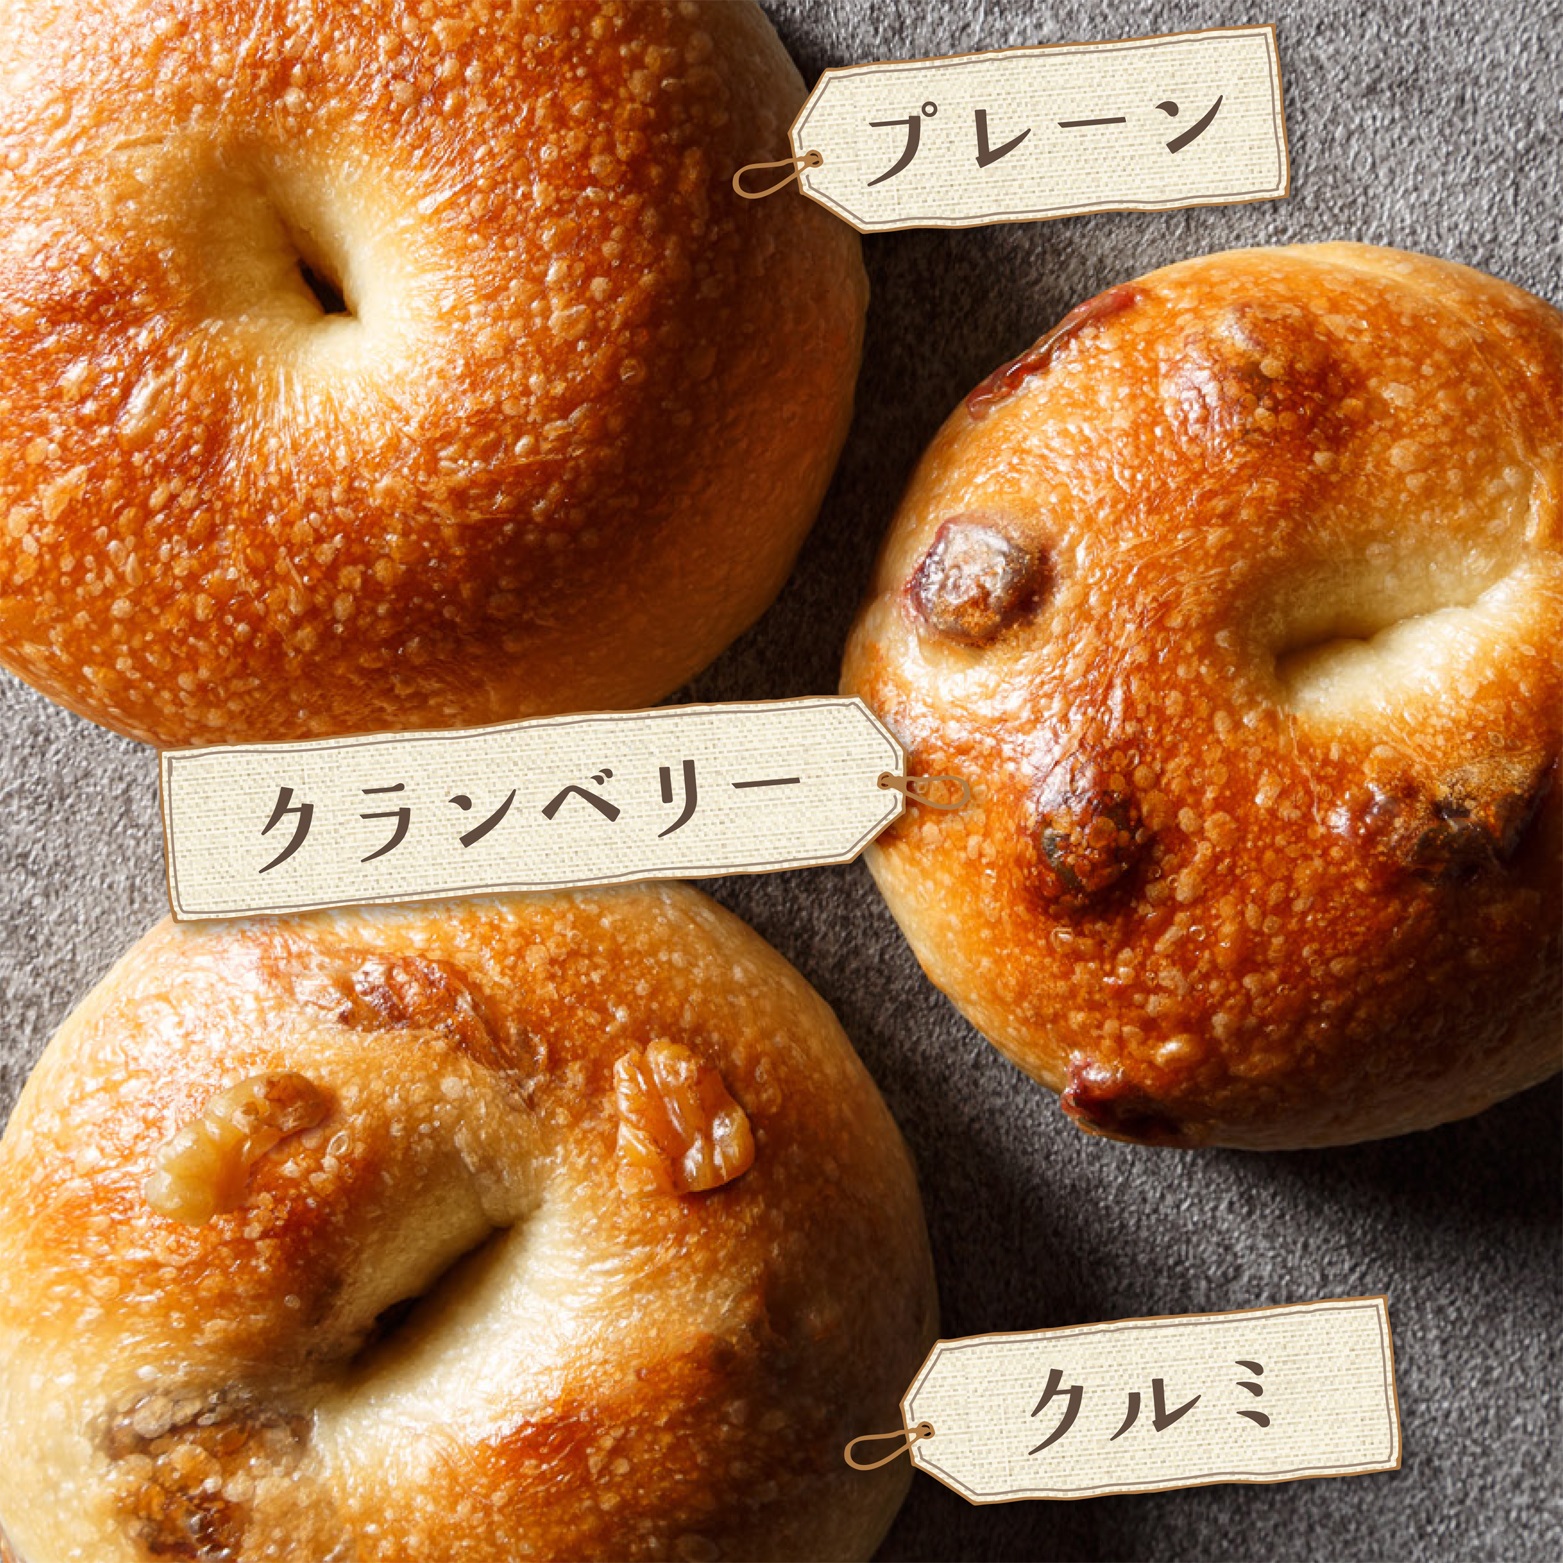 熊本 阿蘇 ギフト プレゼント 贈り物 柑七 おまかせパンセット 人気 パン職人 冷凍品 パン